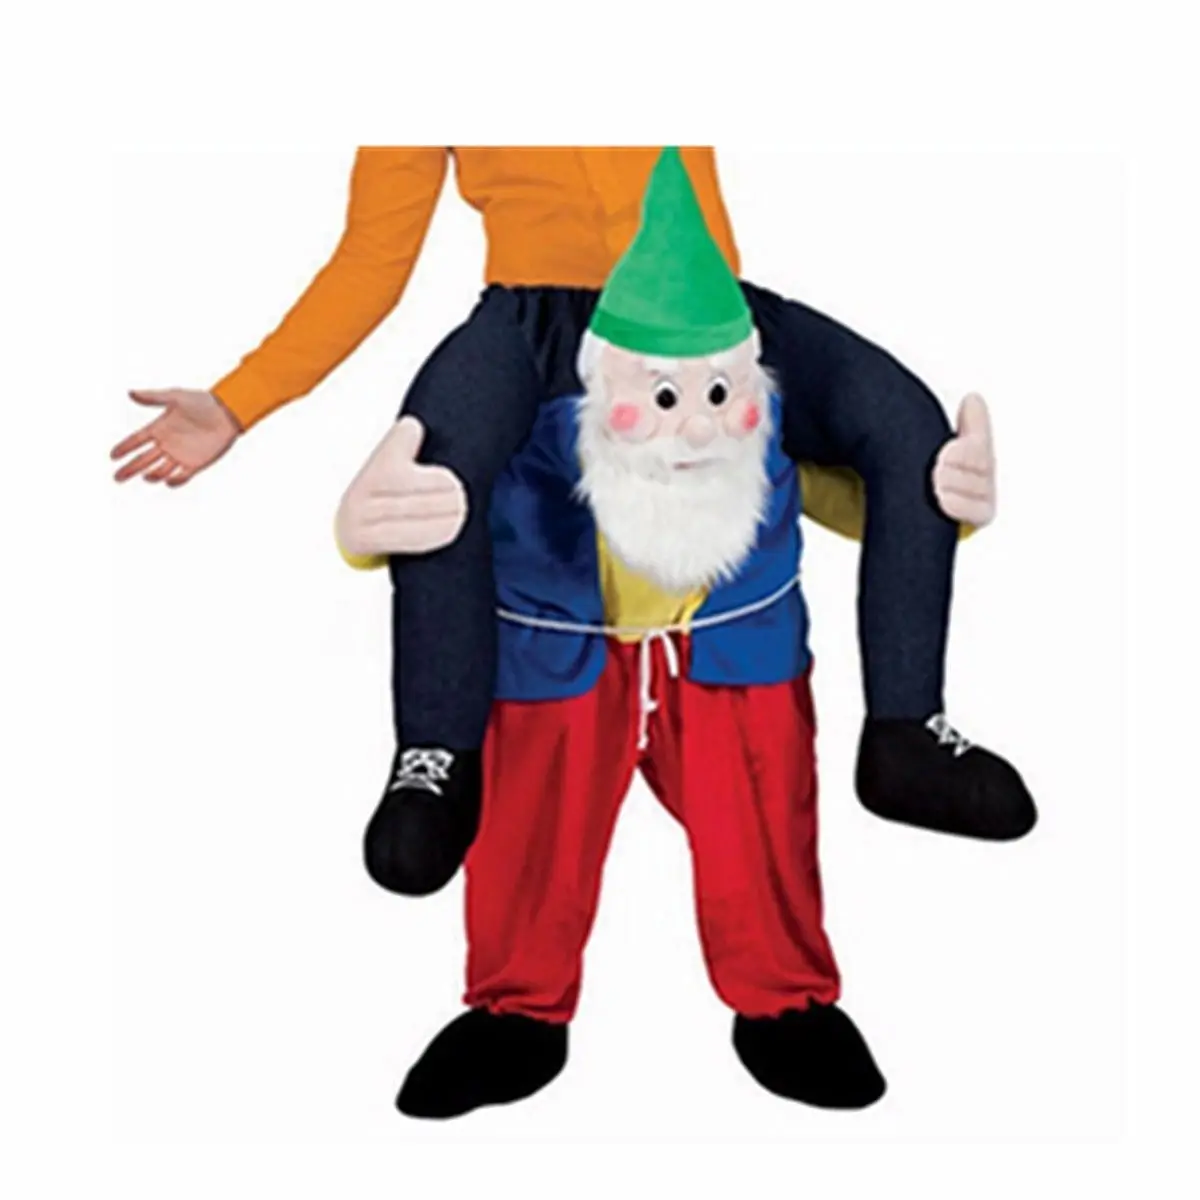 Carry Me Ride on Snowman Dwarf маскарадный костюм, вечерние костюмы для костюмированной игры, одежда для рекламы, карнавал, Рождество, фестиваль, для взрослых